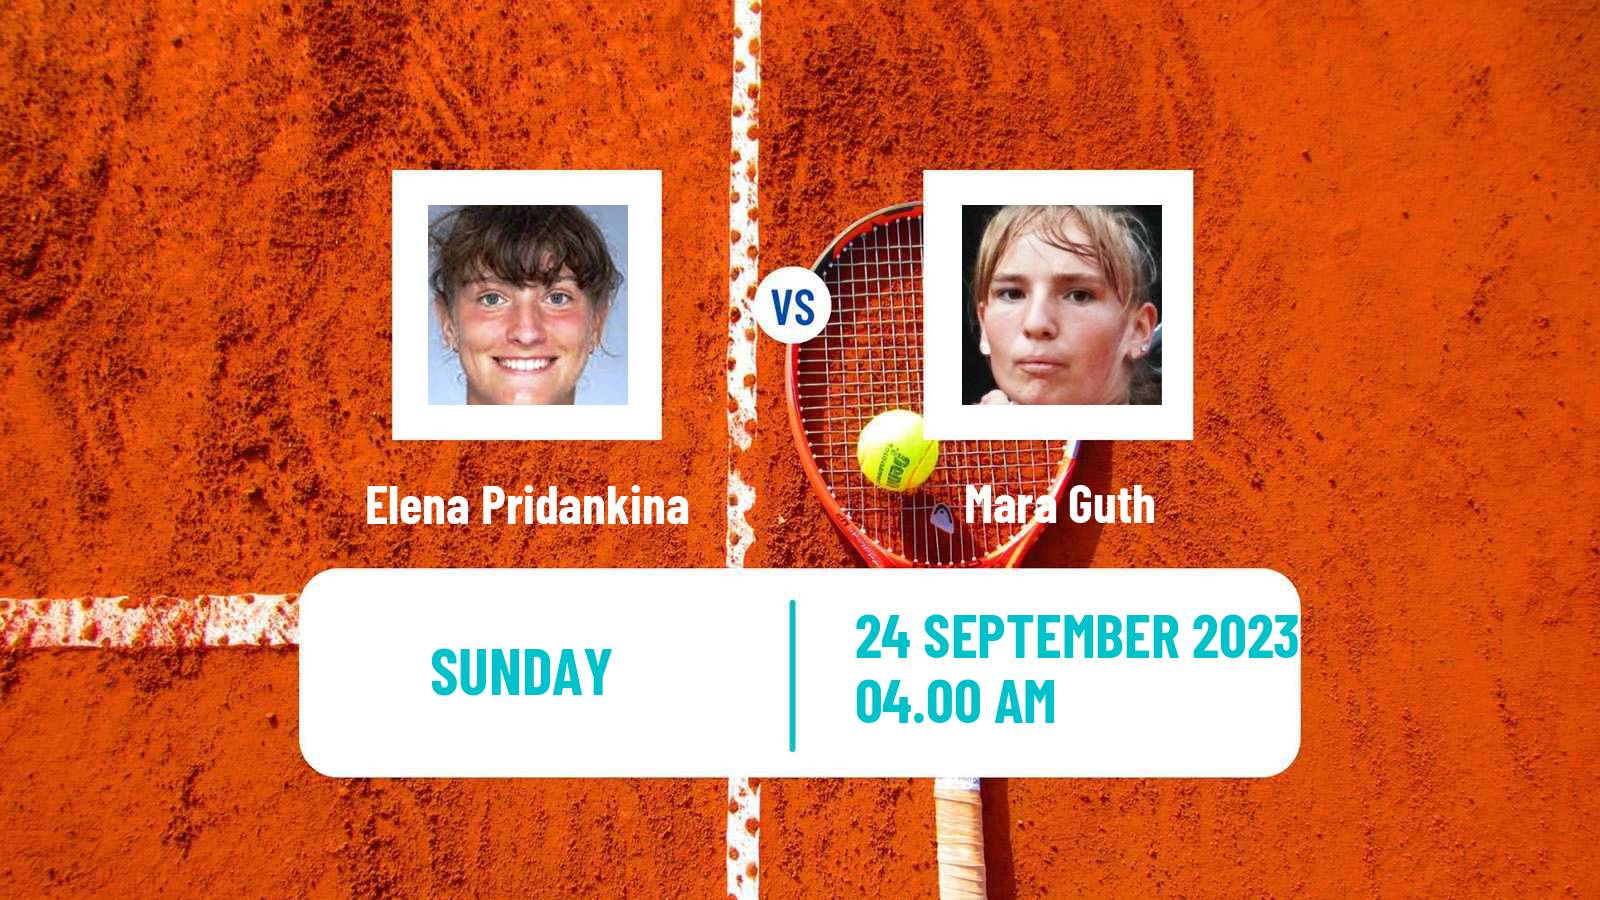 Tennis ITF W15 Kursumlijska Banja 11 Women Elena Pridankina - Mara Guth